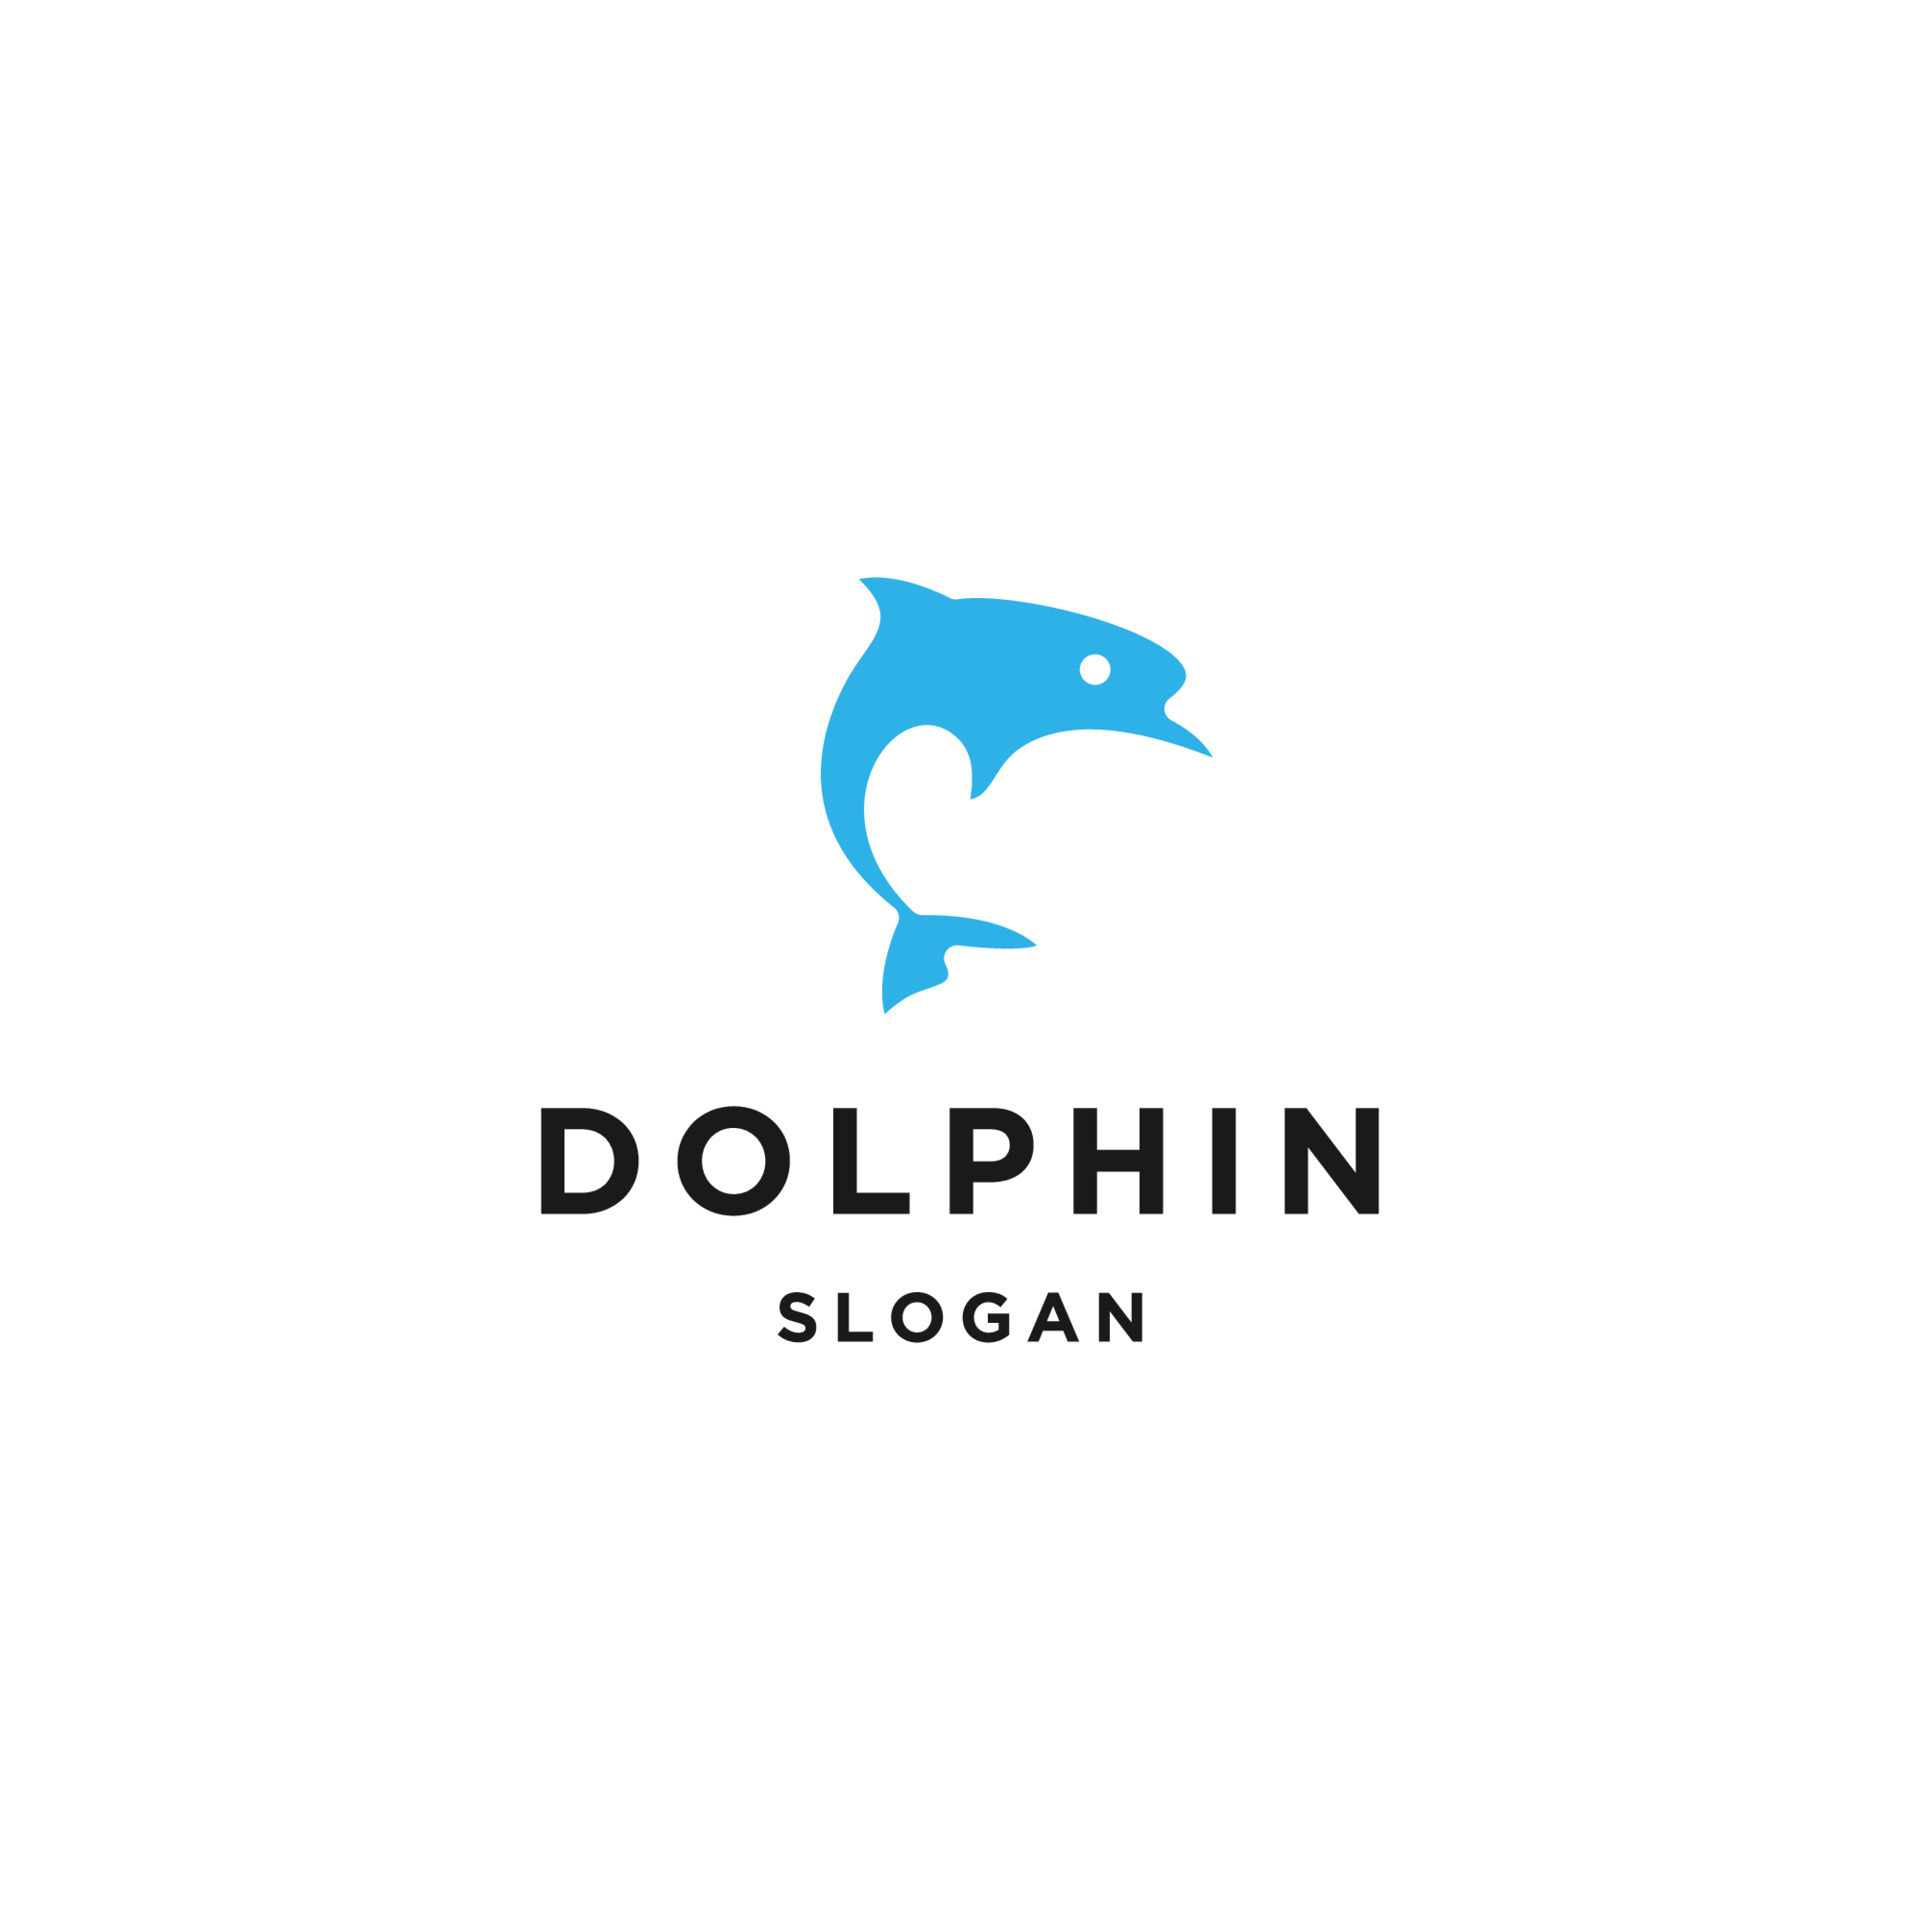 Dolphin logo icon flat design template 13261083 Vector Art at Vecteezy